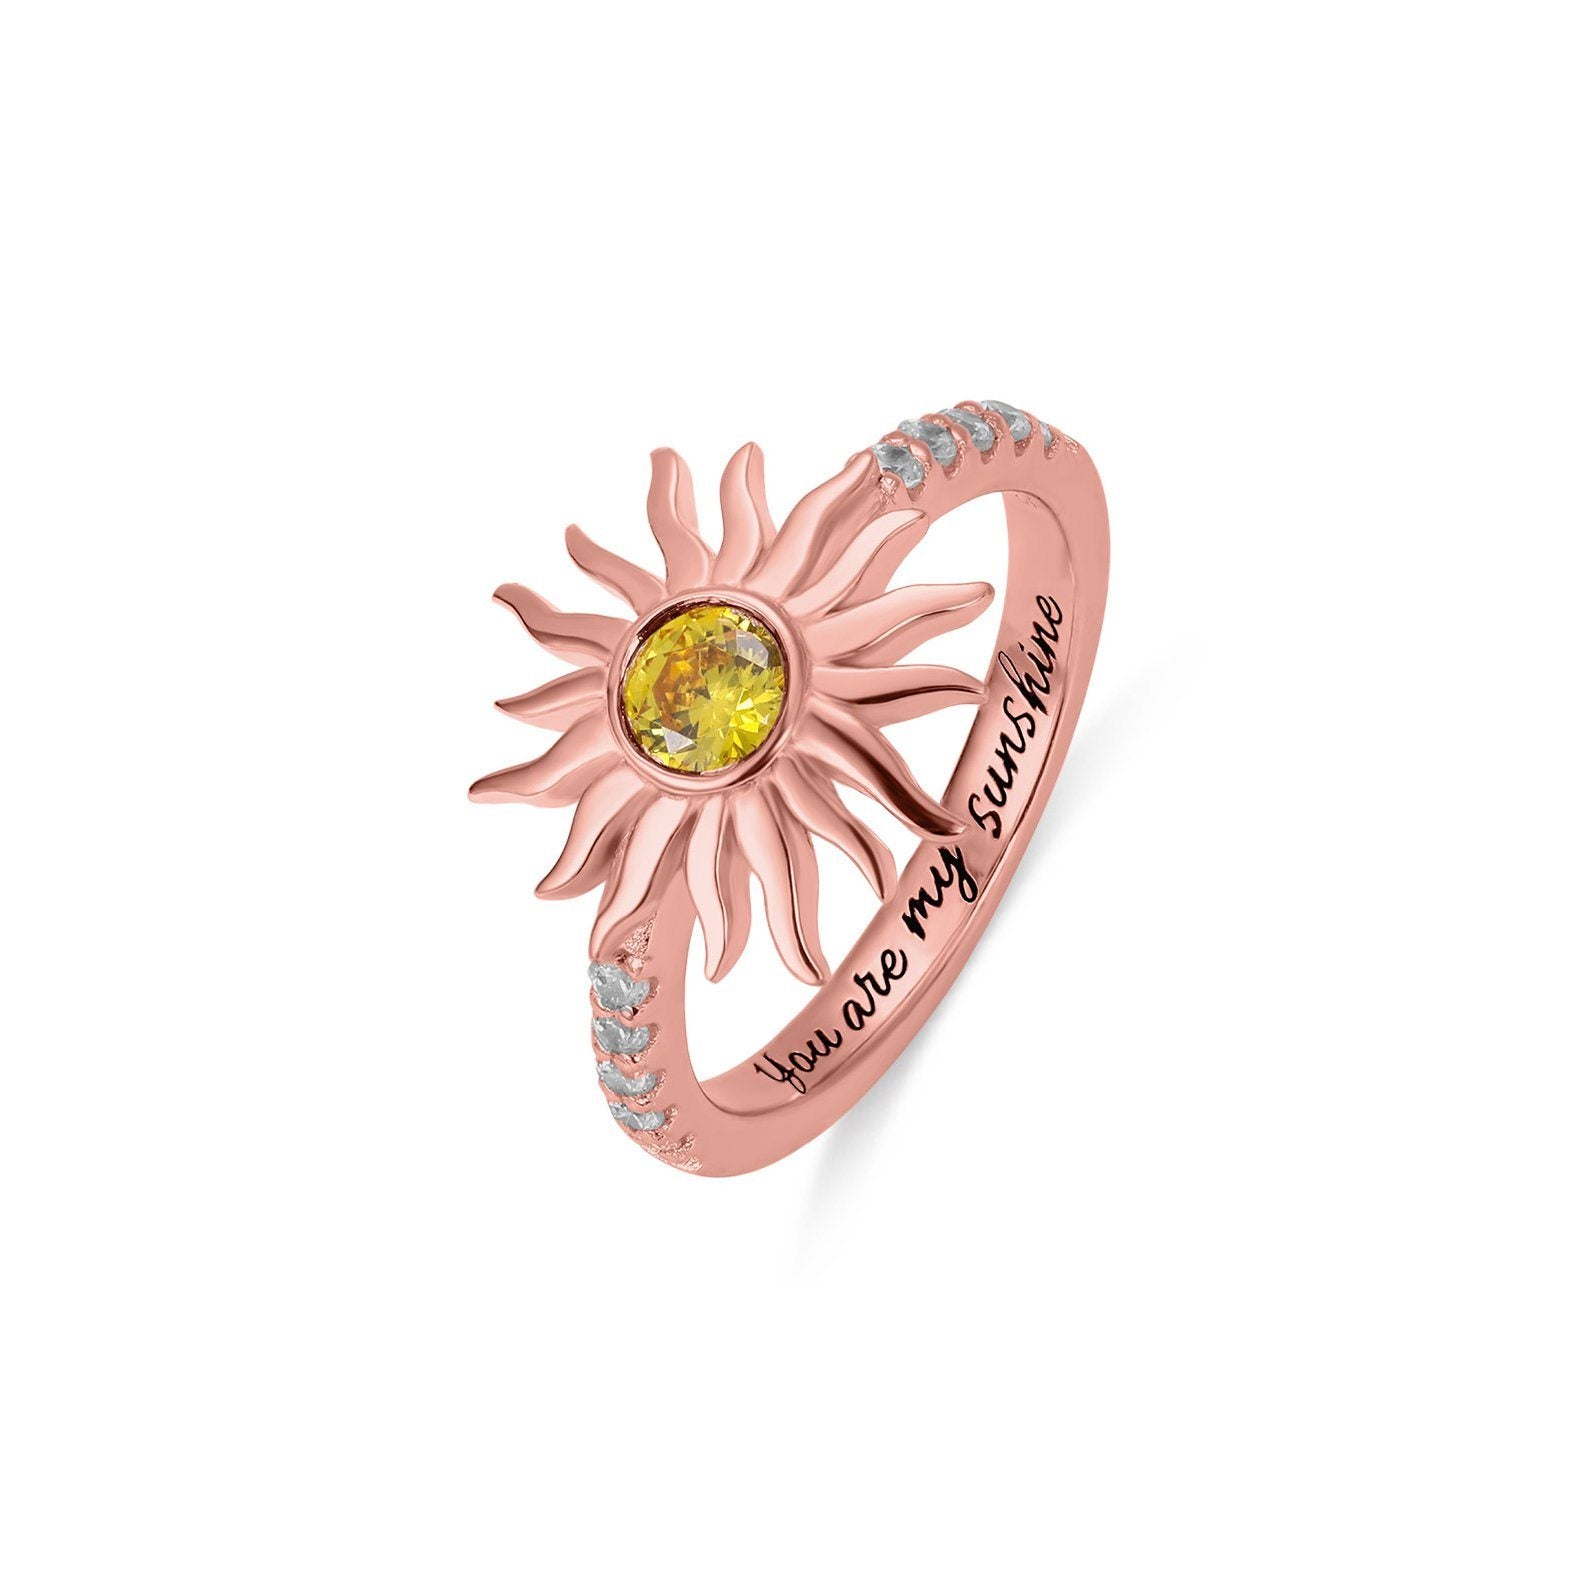 Birthstone Sunflower Ring